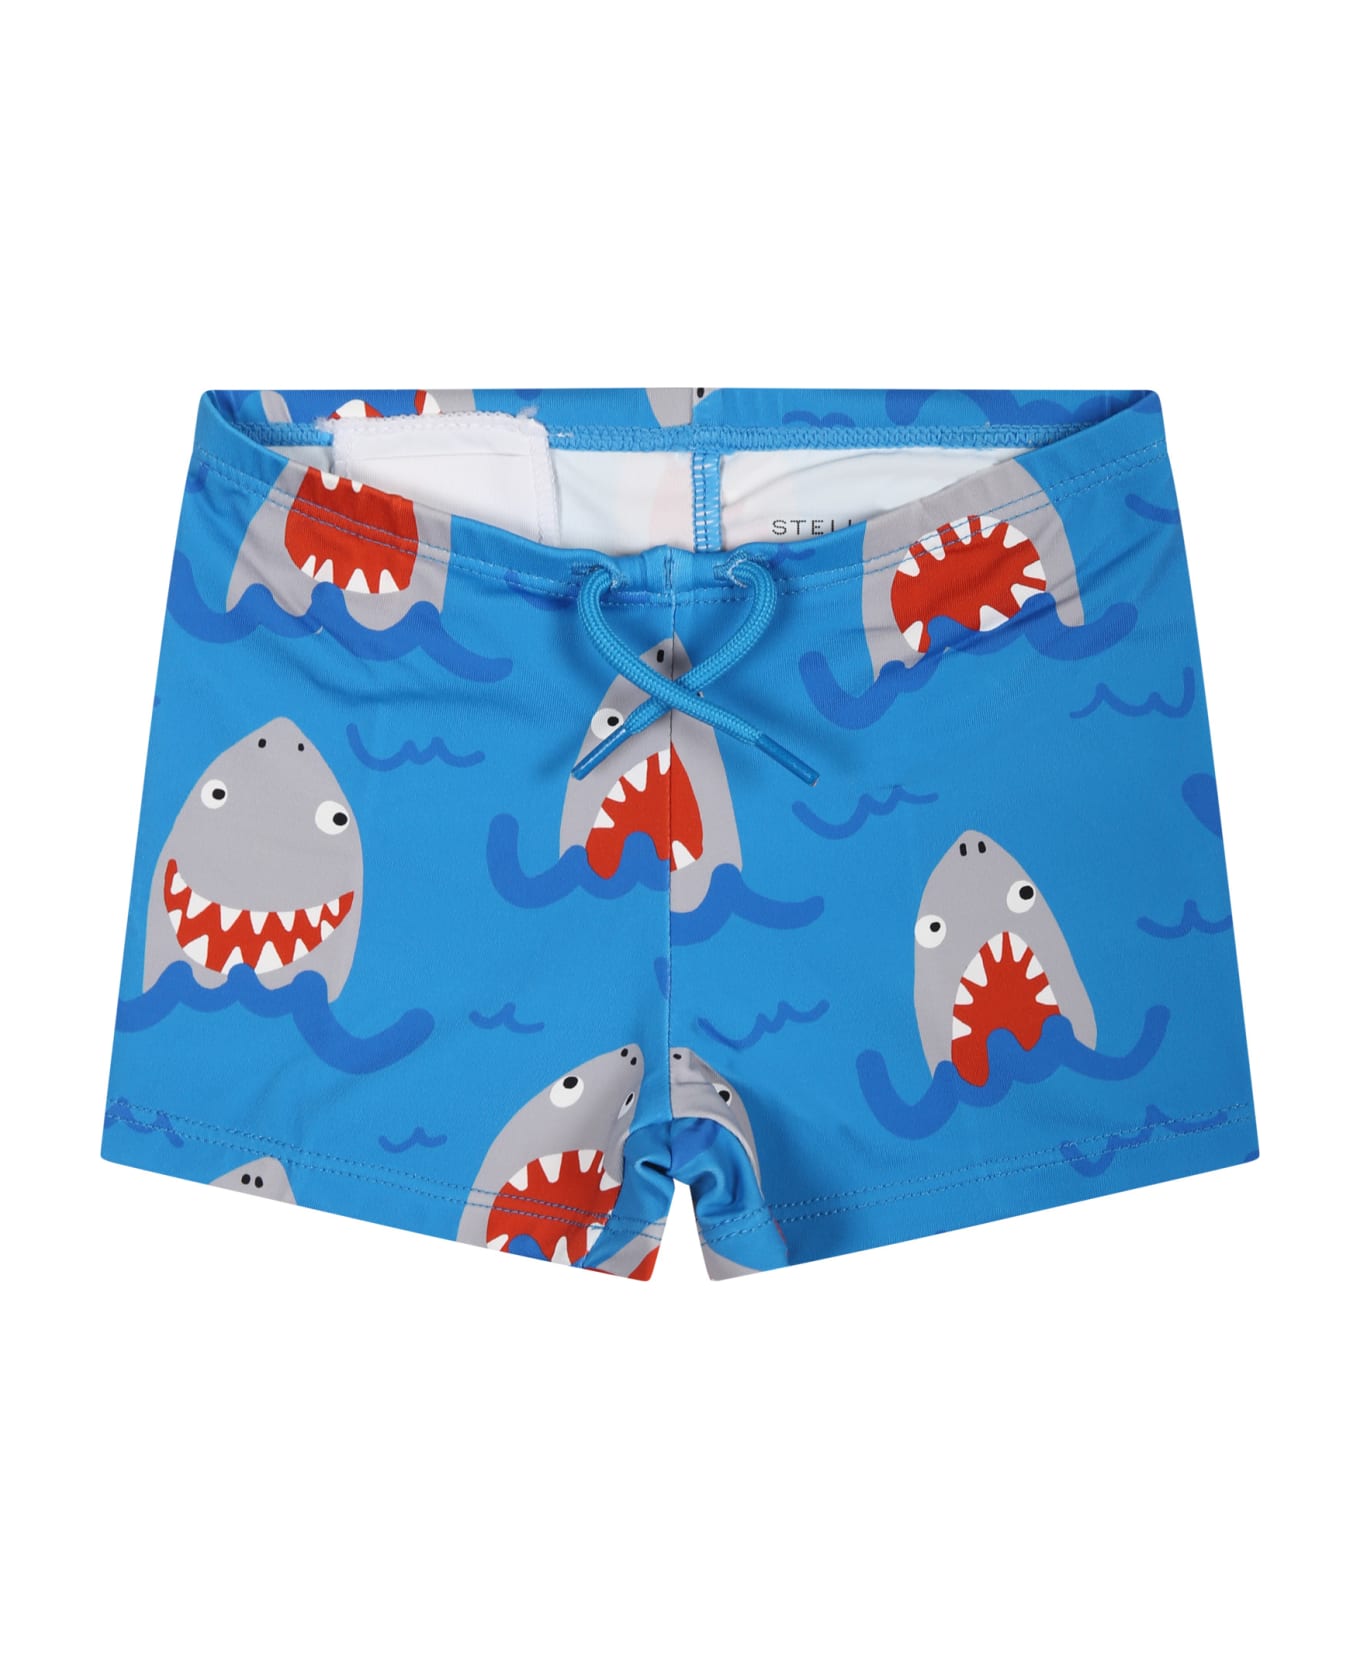 Stella cream McCartney Light Blue Boxer Shorts For Baby Boy With All-over Shark Print - Celeste